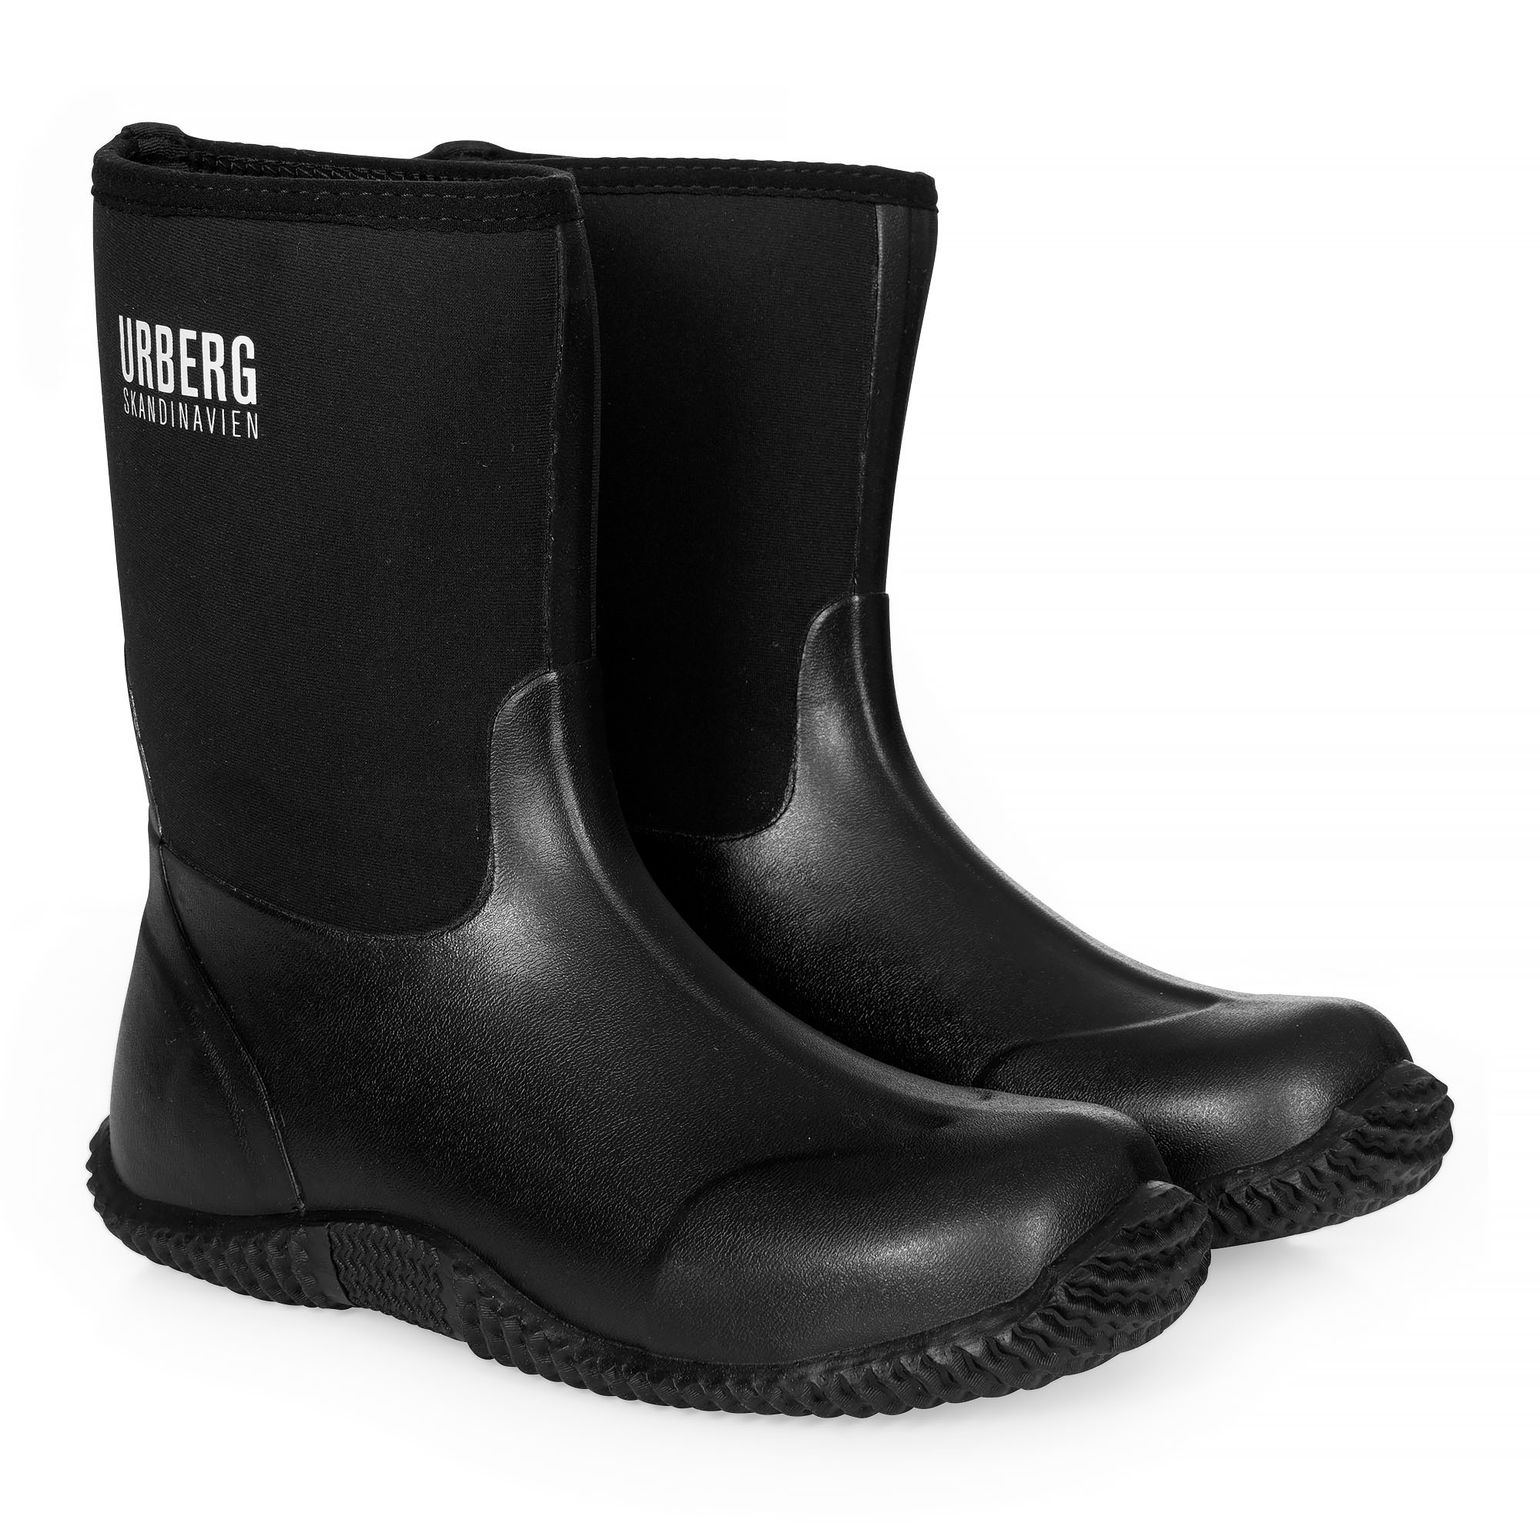 Urberg Unisex Örby Neoprene Boot Black